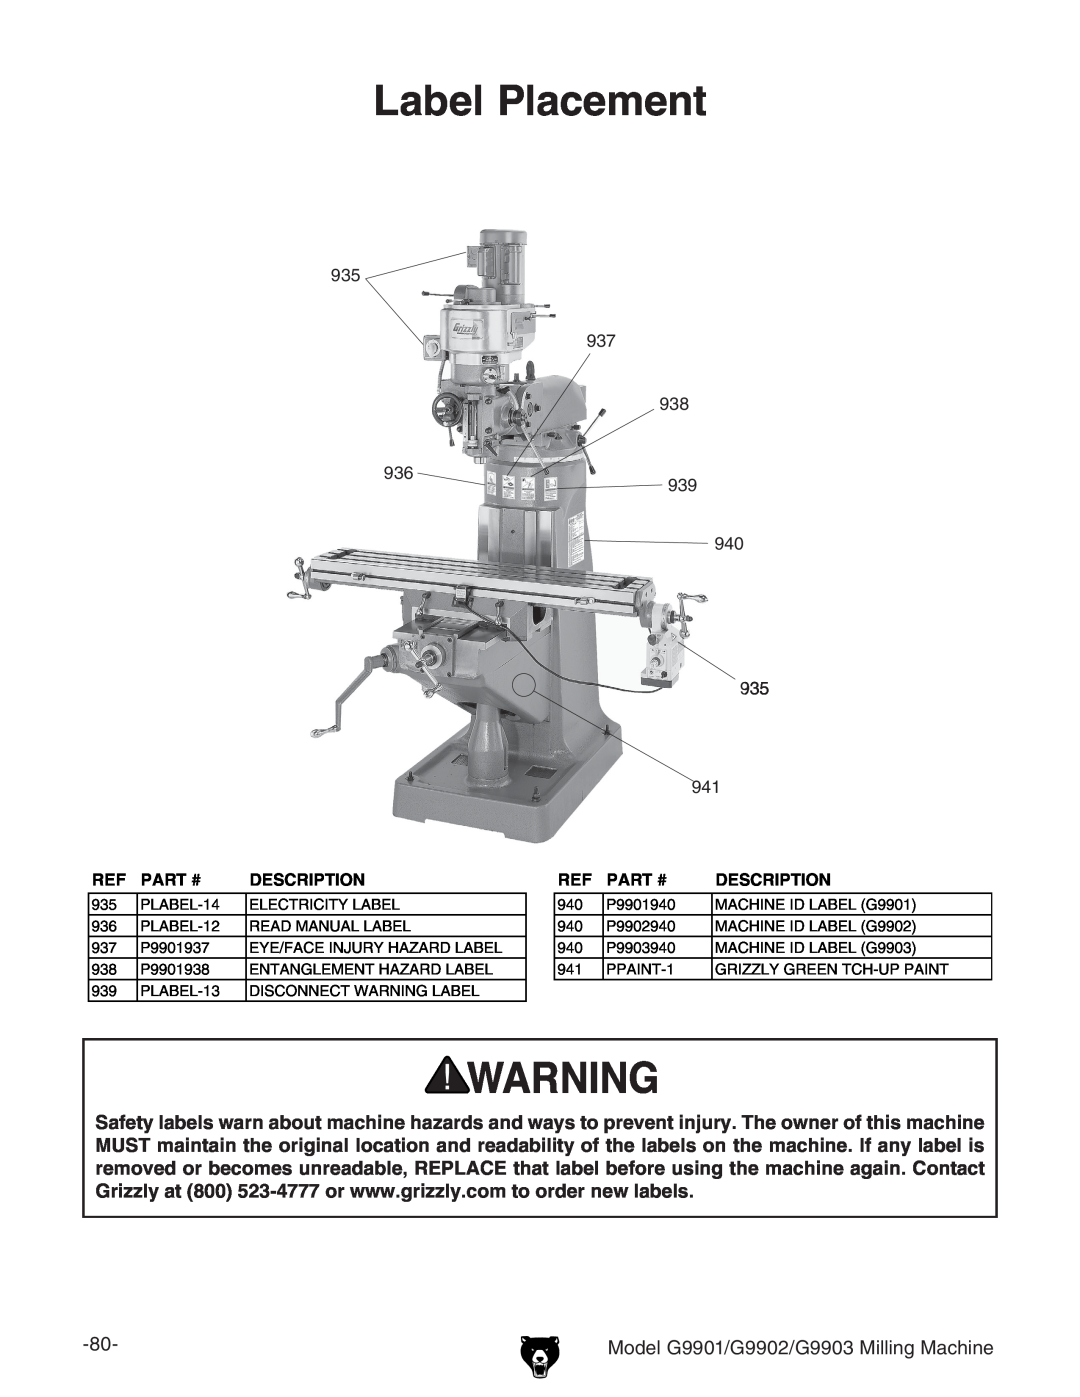 Grizzly manual Label Placement, Model G9901/G9902/G9903 Milling Machine, Part #, Description 